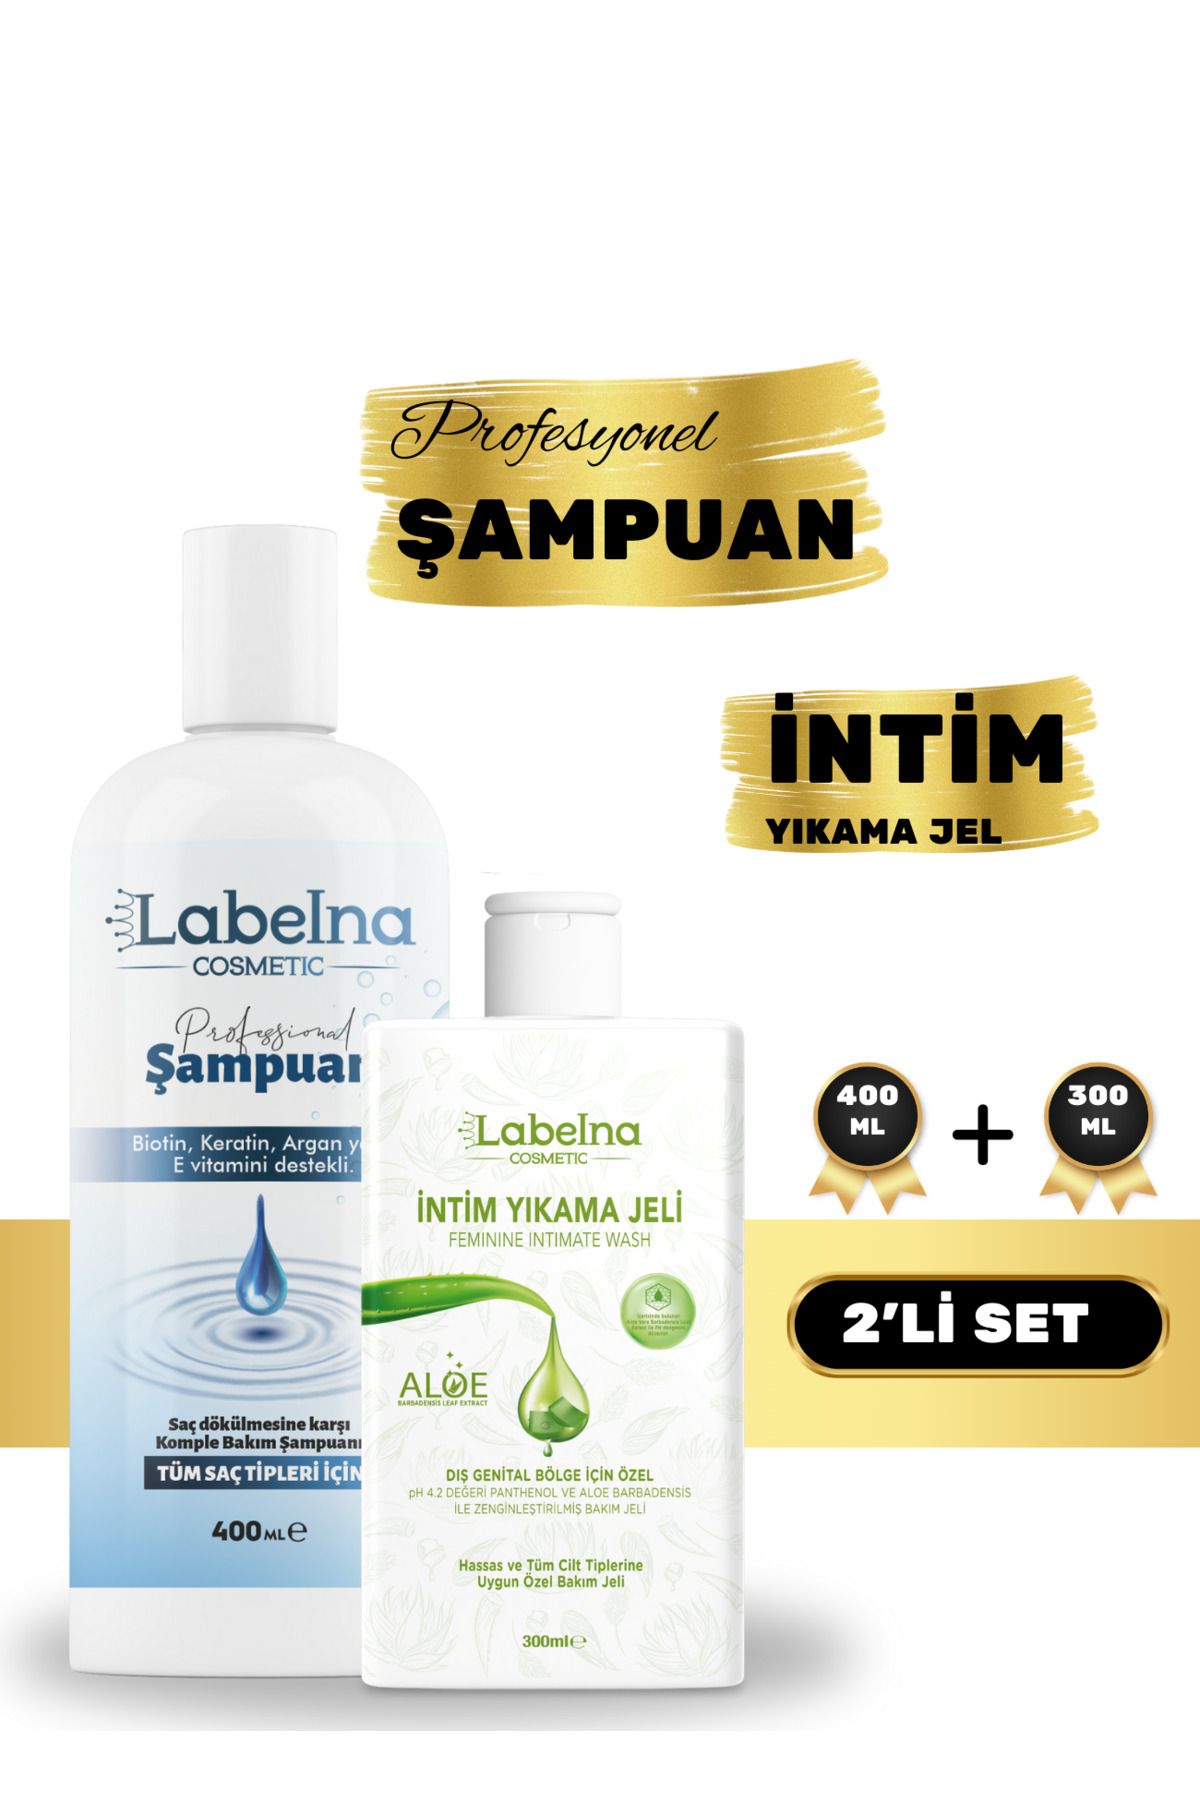 Labelna Cosmetic Genital Bölge Koku Akıntı Giderici Intim Jel 300 ml & Saç Dökülmesine Karşı Şampuan 400 ml